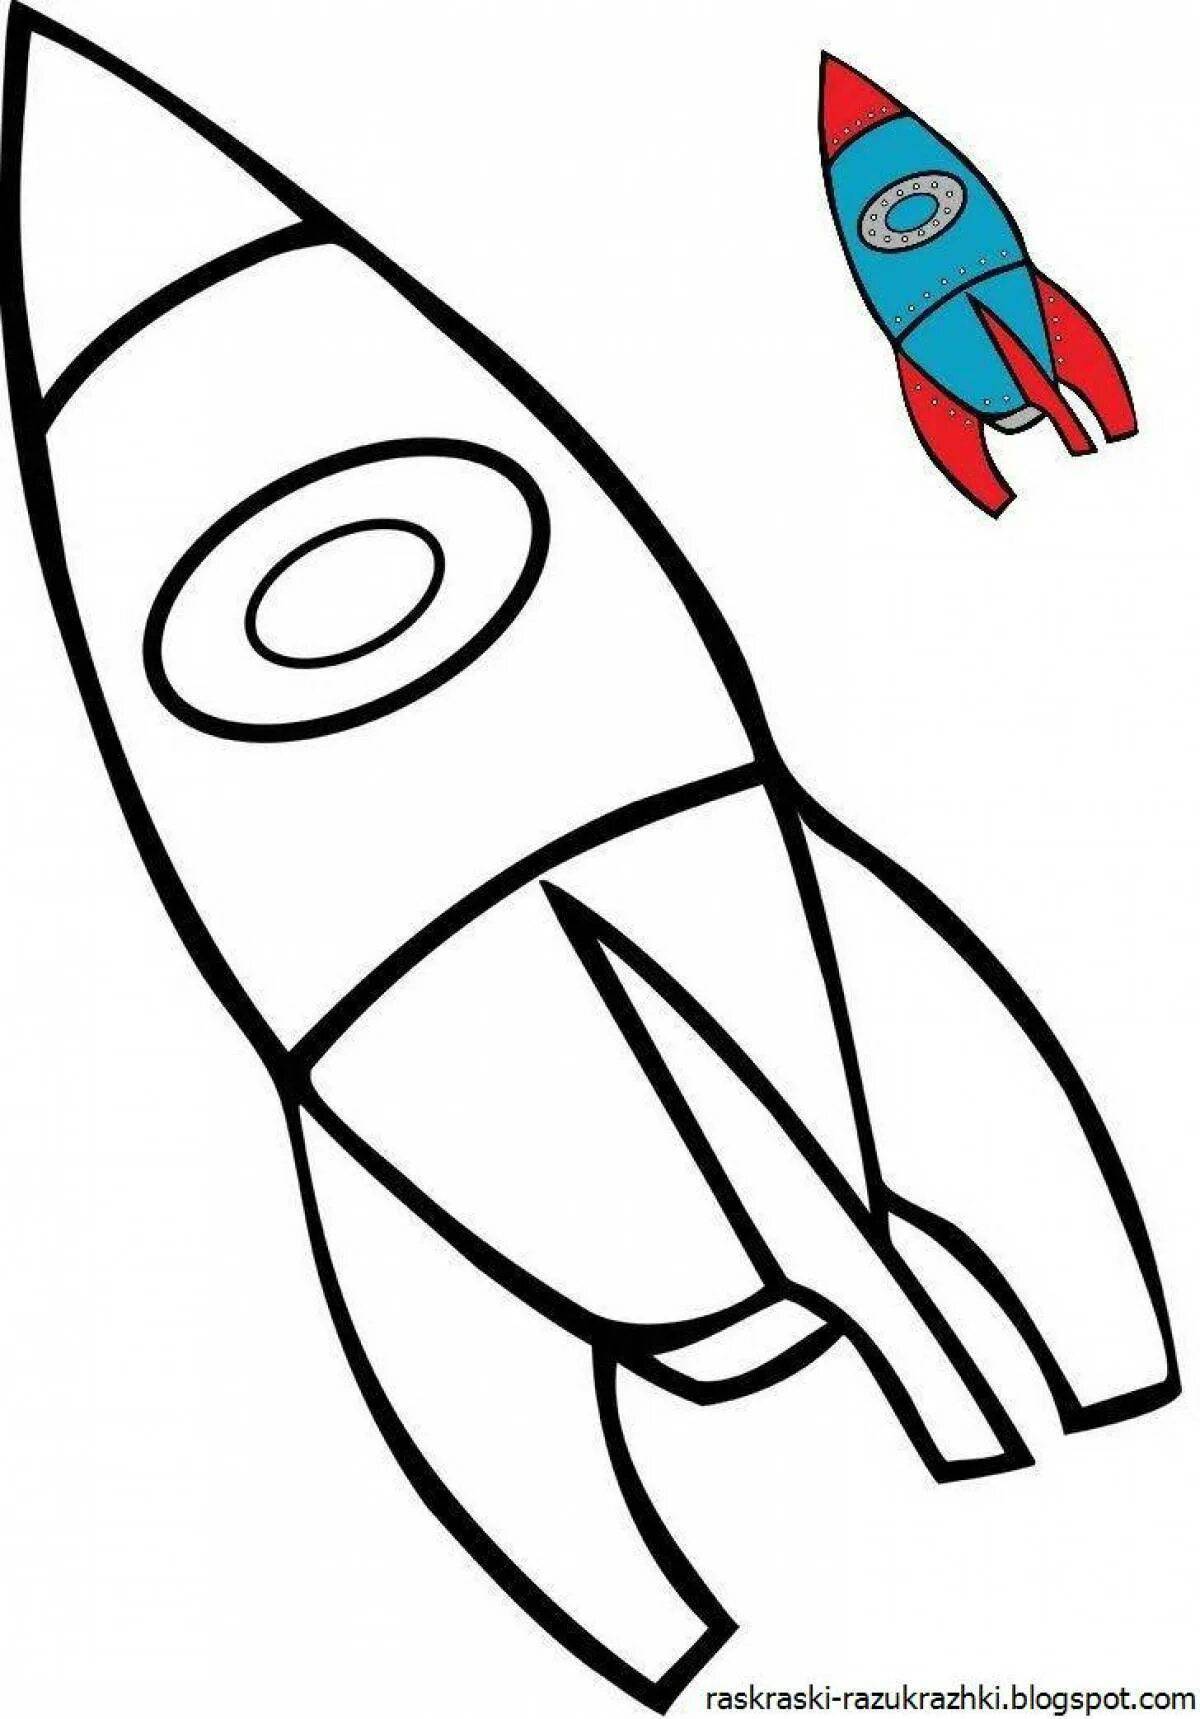 Покажи как нарисовать ракету. Ракета раскраска. Ракета раскраска для малышей. Ракета для рисования для детей. Ракета трафарет для детей.